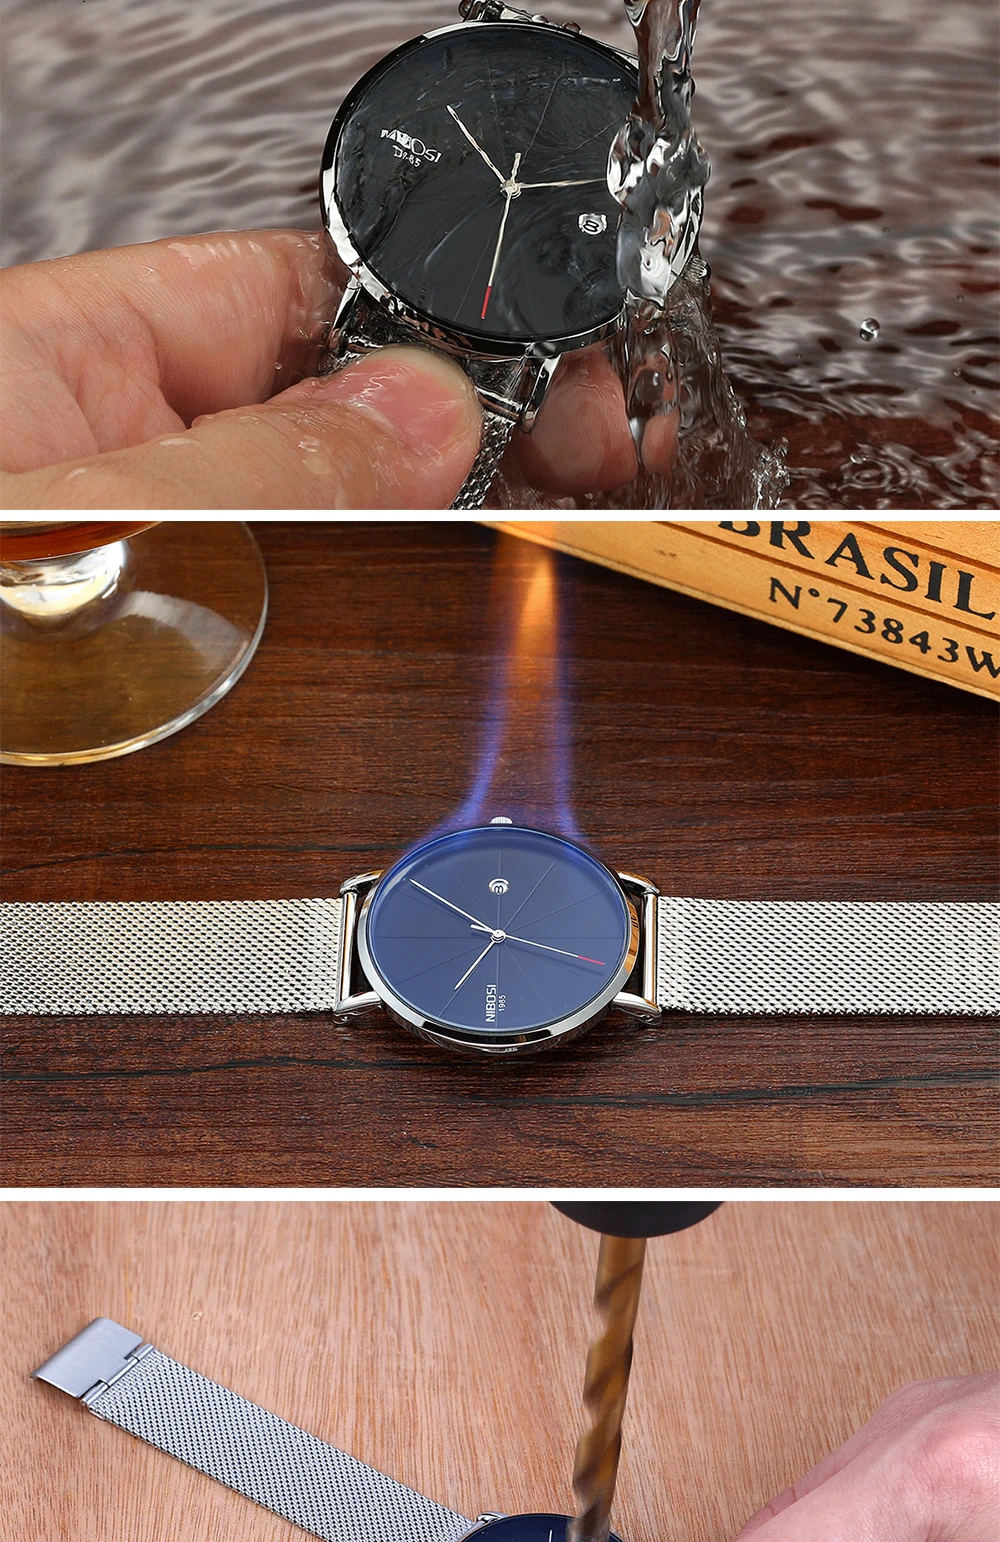 NIBOSI простые мужские s часы лучший бренд класса люкс кварцевые часы мужские повседневные тонкие сетчатые стальные водонепроницаемые спортивные часы Relogio Masculino